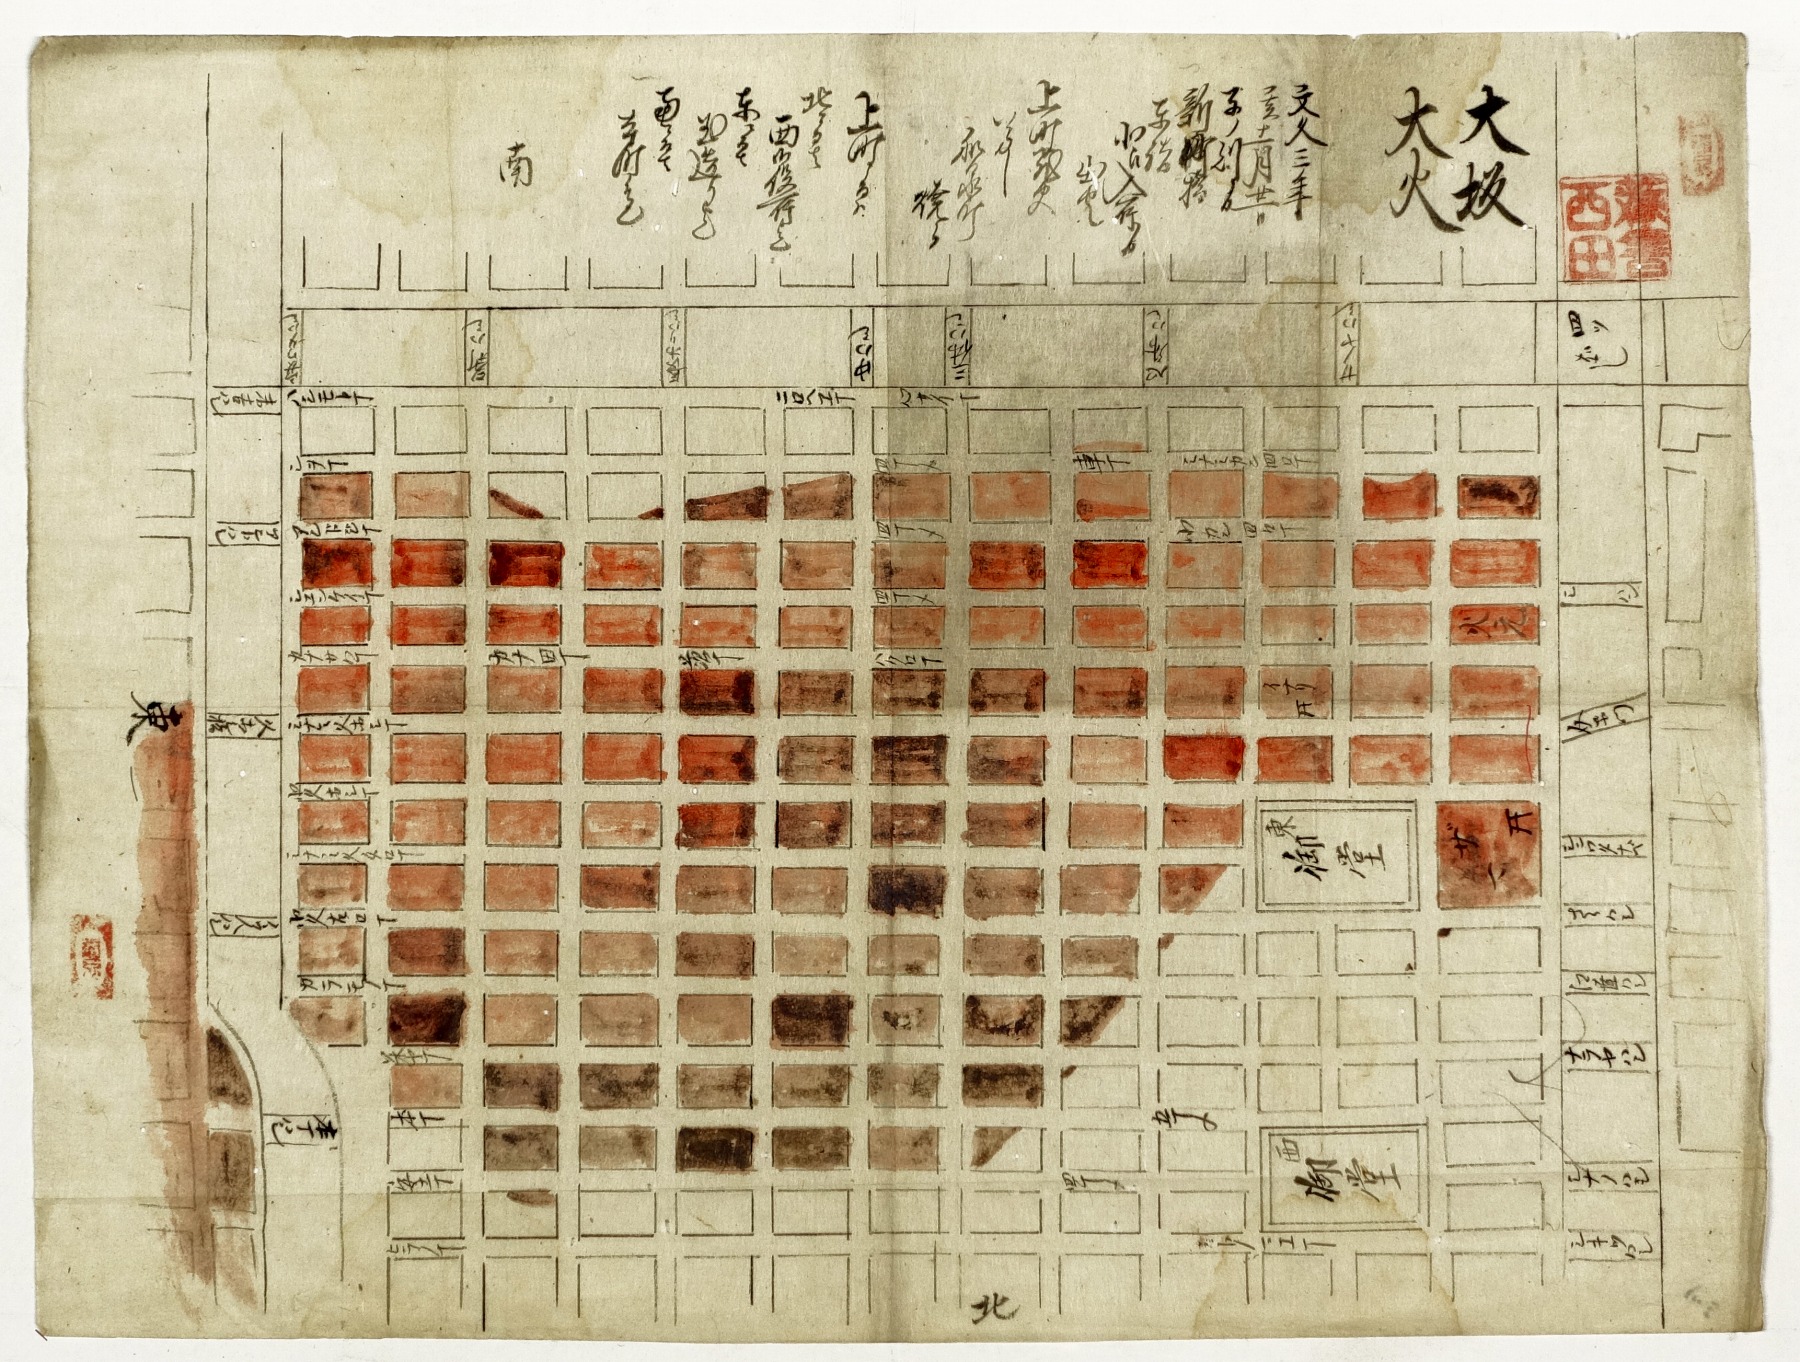 正規品HOT大阪市編乃南区新町図構成 古地図